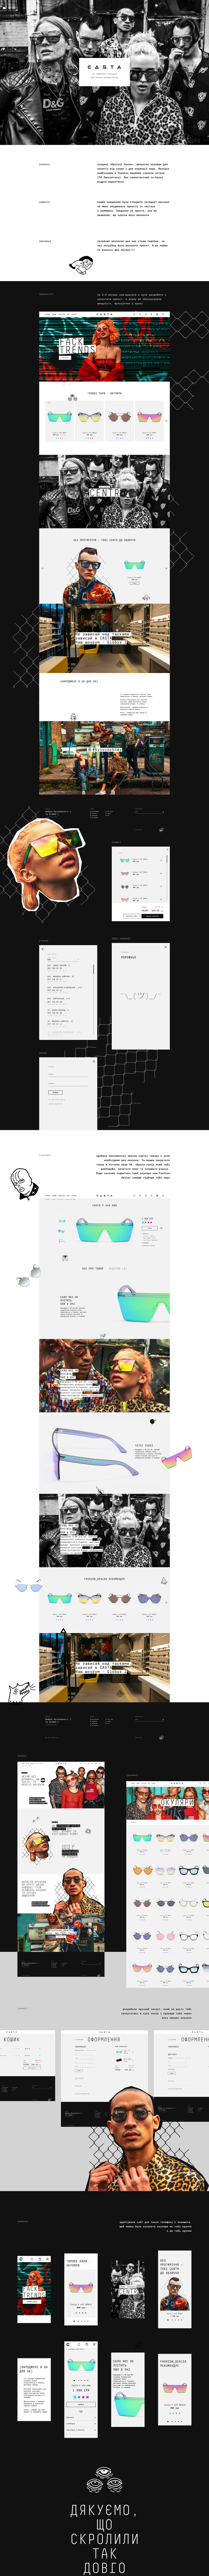 eyewear glasses Sunglasses UI ux e-commerce comercial store shop senseproduction